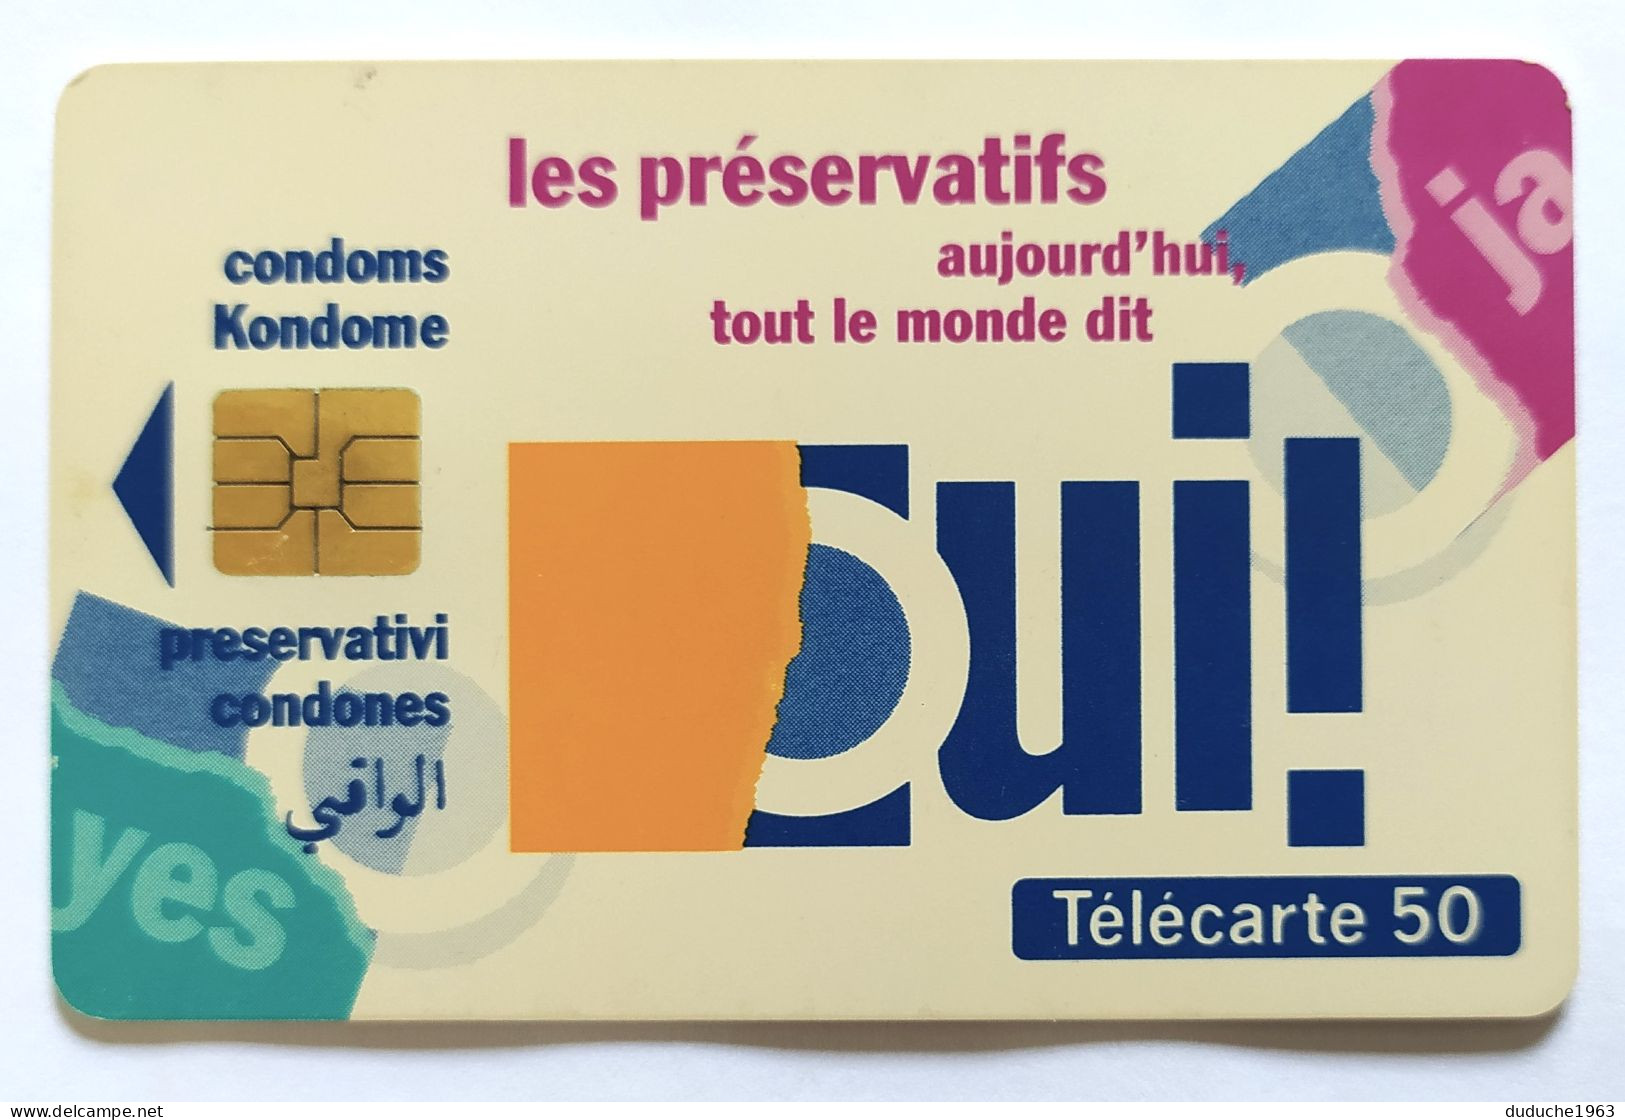 Télécarte France - Sida Info Service - Non Classificati